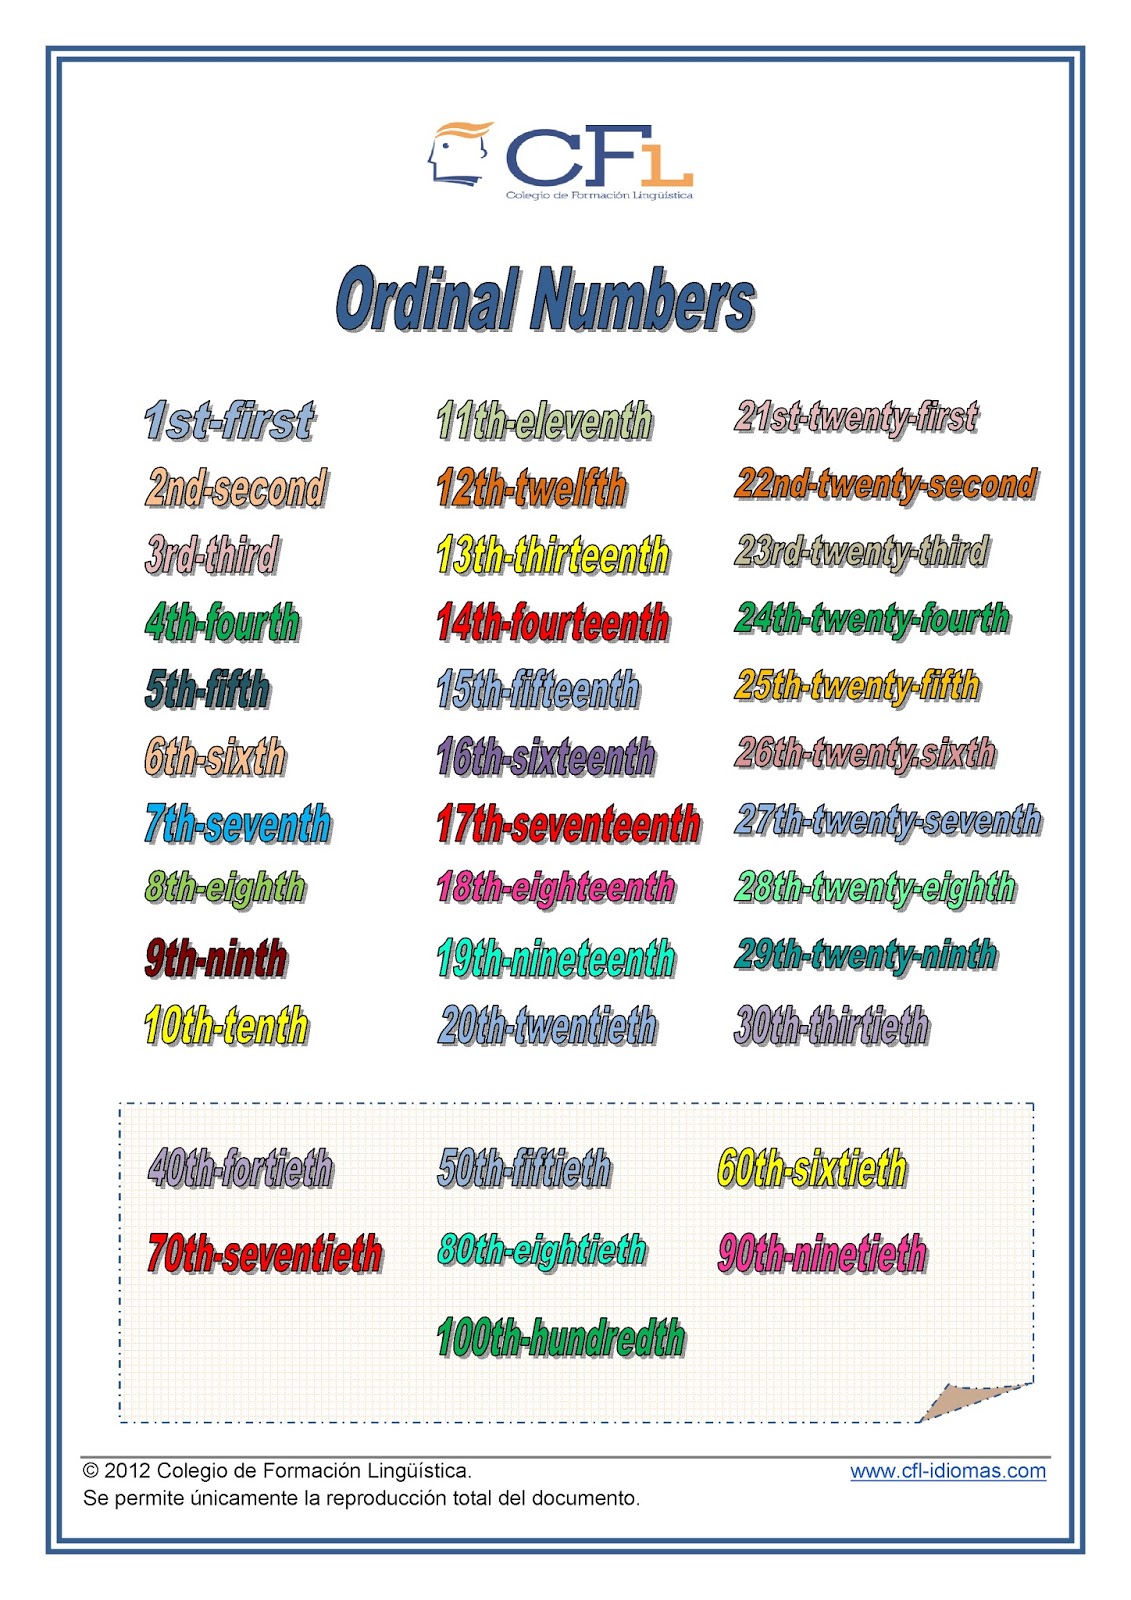 edublog-efl-cardinal-and-ordinal-numbers